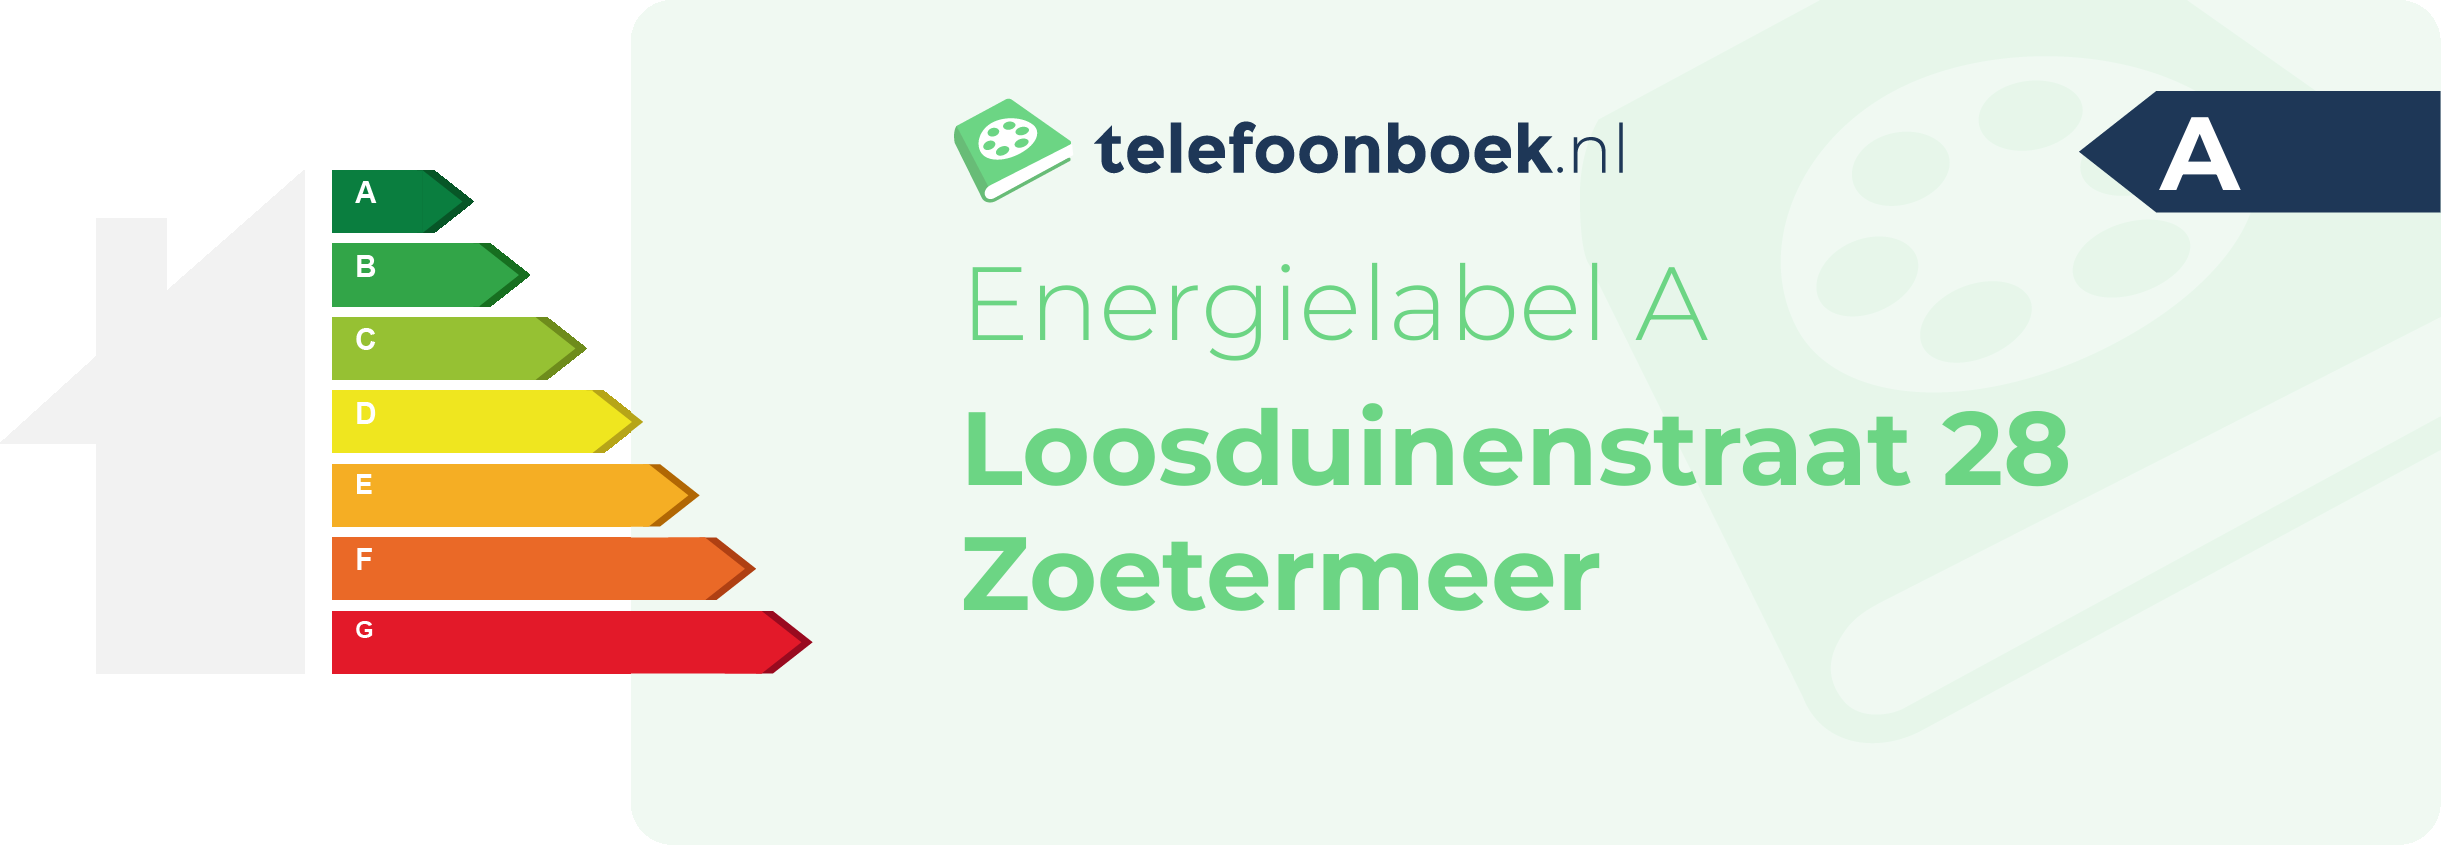 Energielabel Loosduinenstraat 28 Zoetermeer